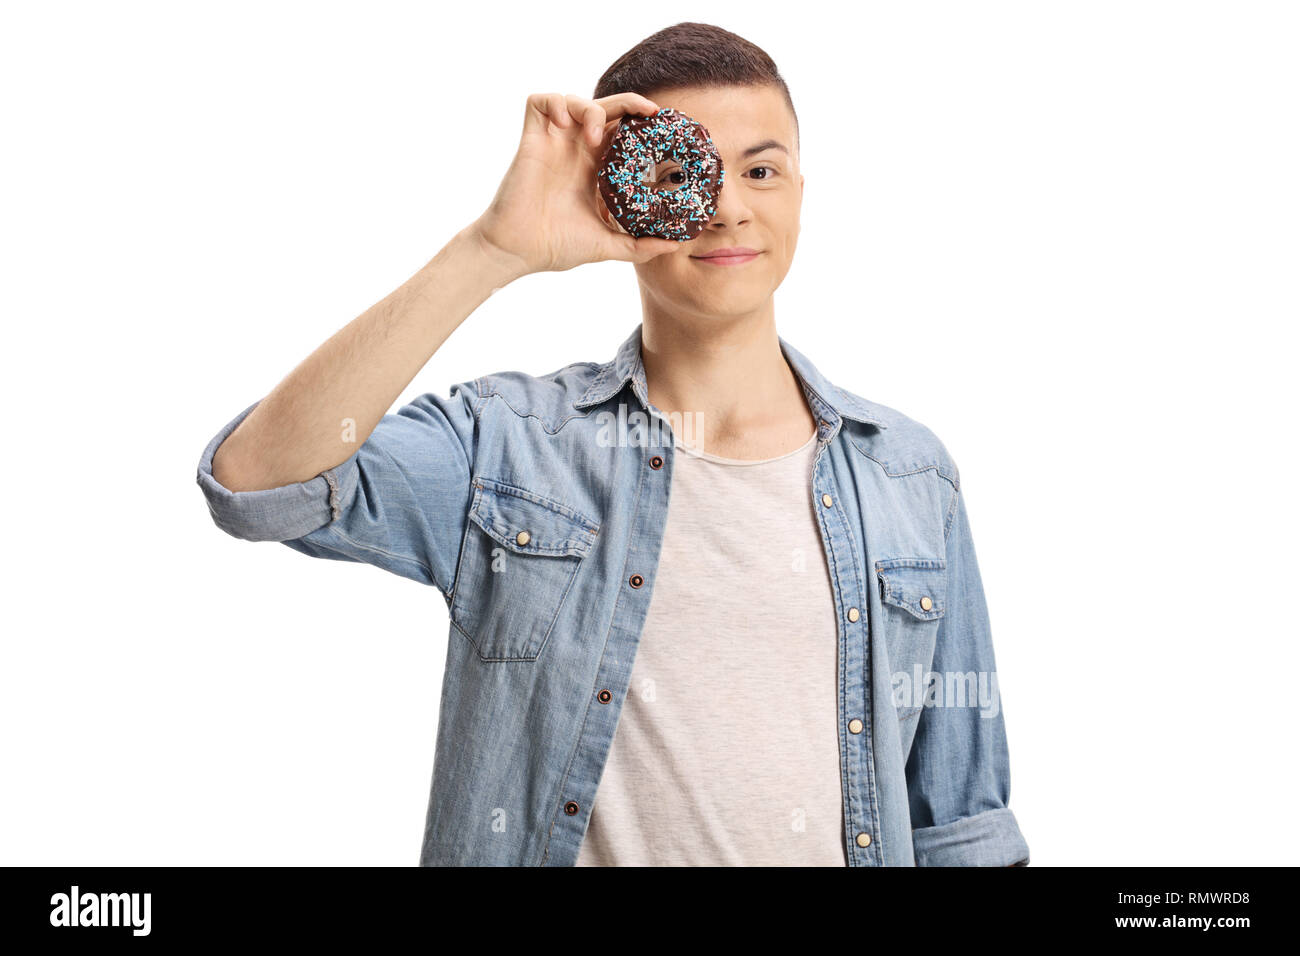 Jeune homme peeking through a donut isolé sur fond blanc Banque D'Images